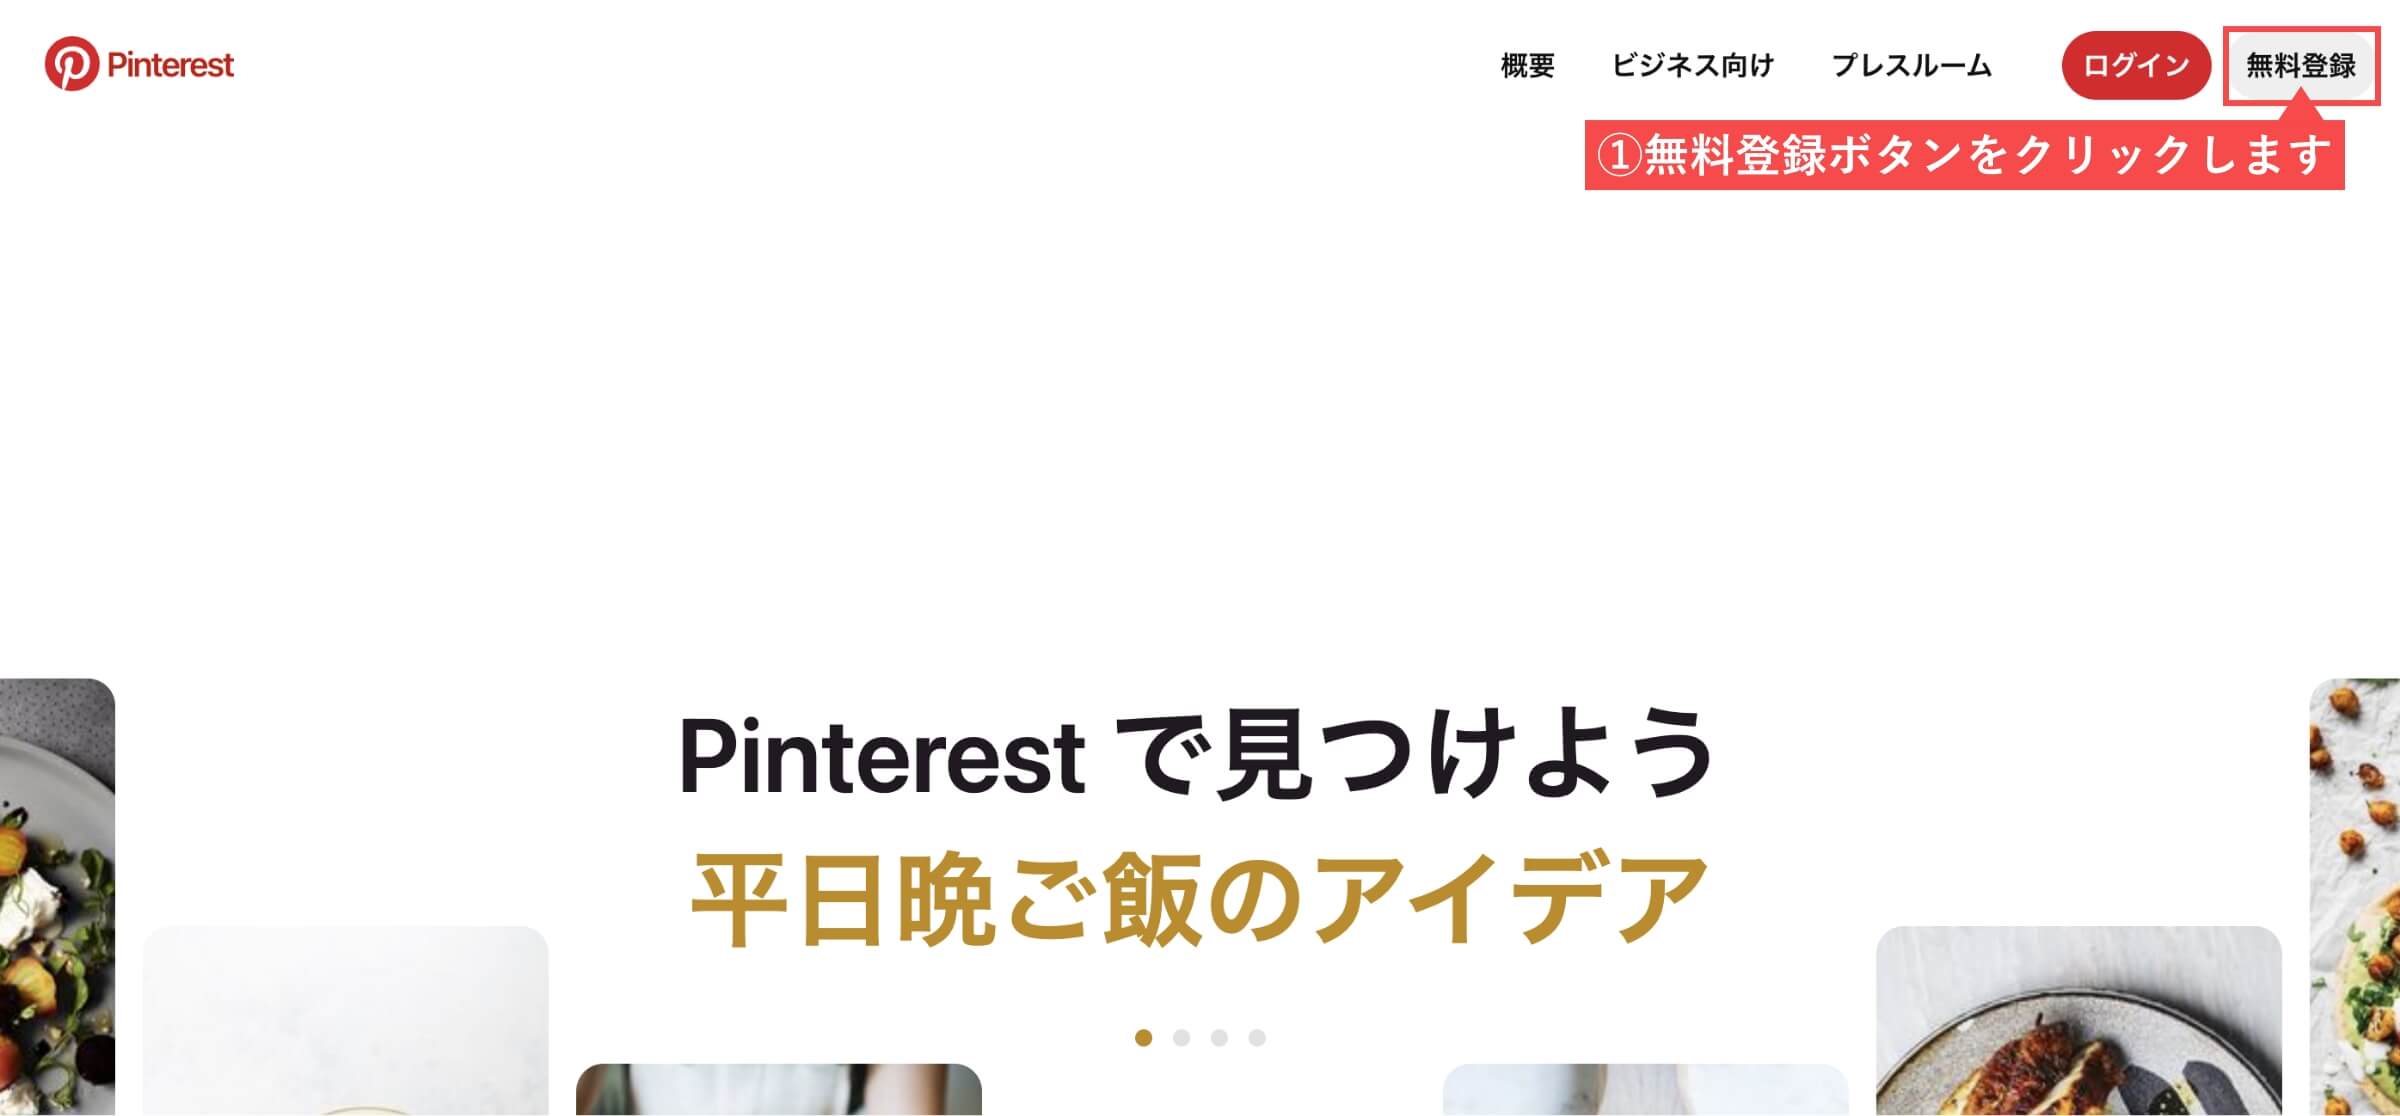 Pinterestのトップページ